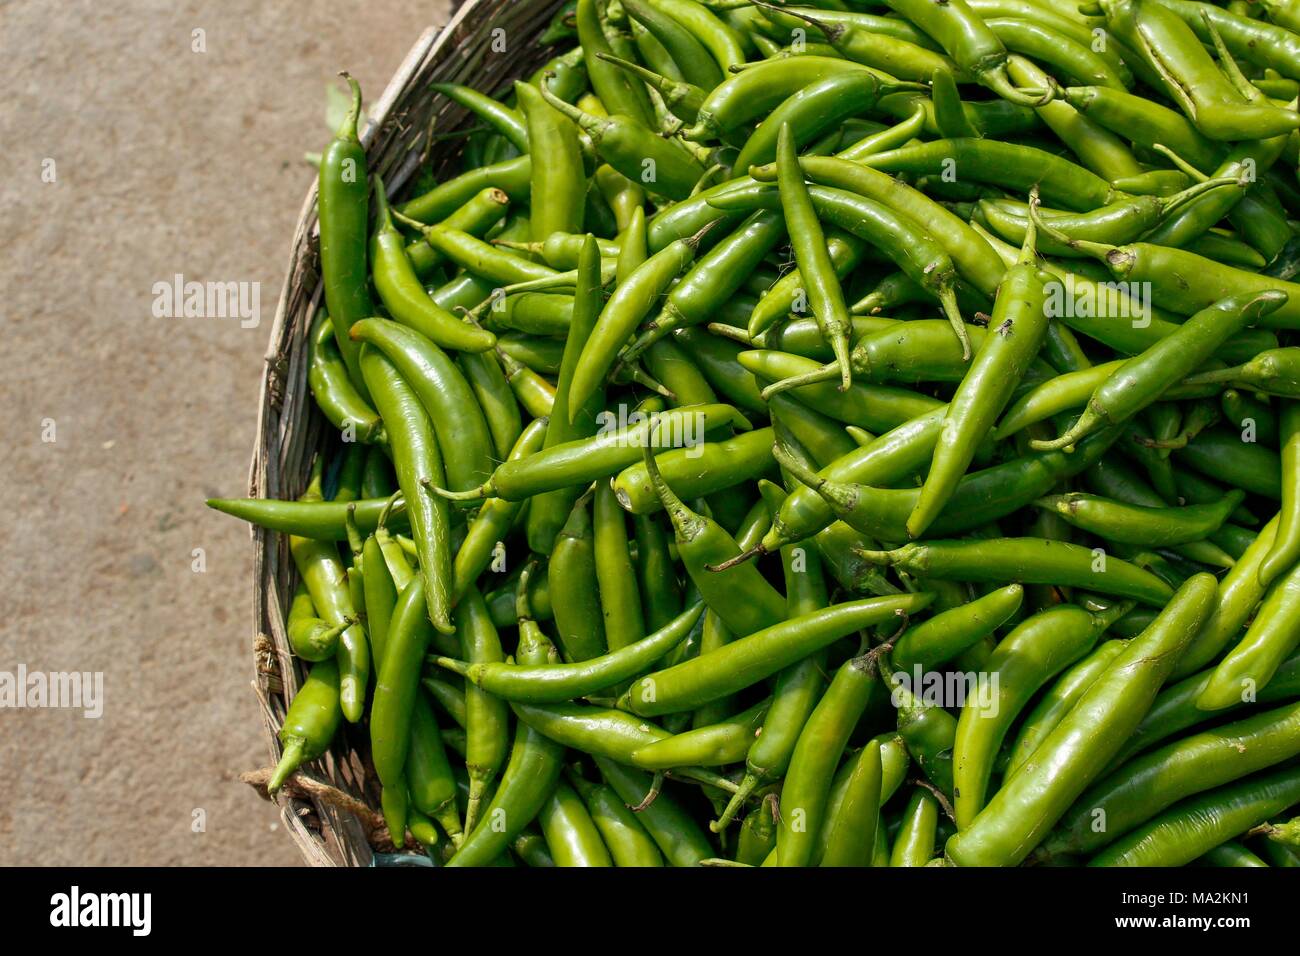 Un panier de piments verts frais sur le marché indien Banque D'Images